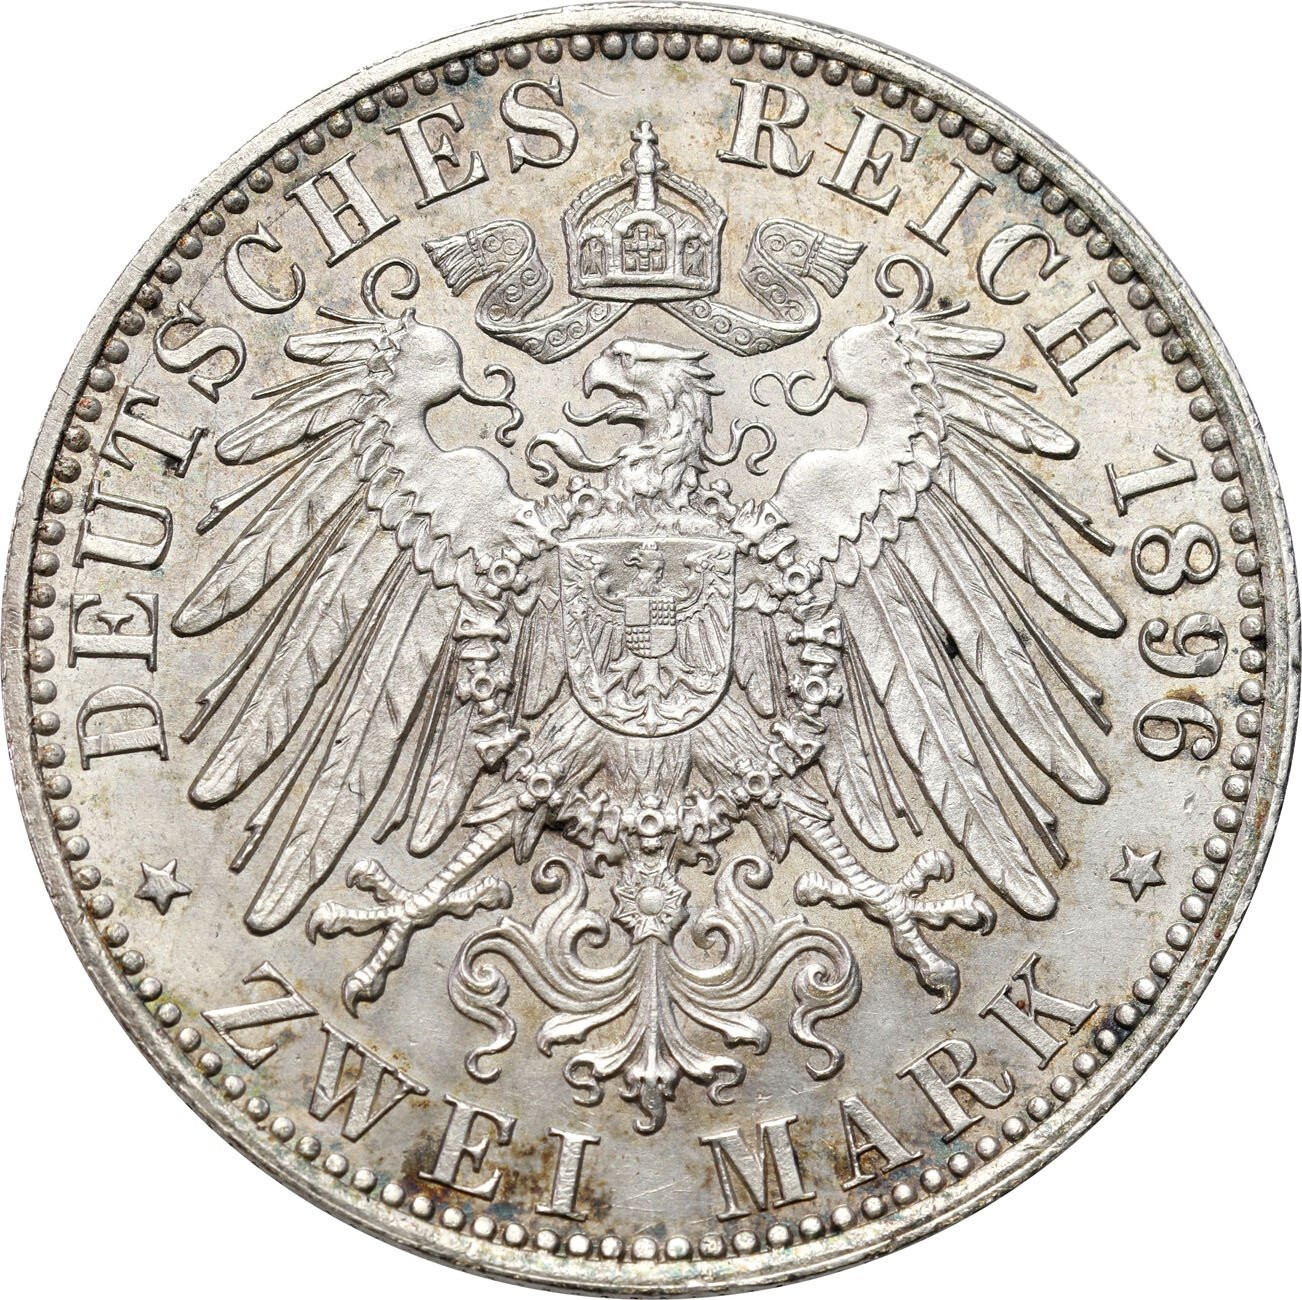 Niemcy, Cesarstwo Niemieckie, Anhalt. Fryderyk I (1871-1904). 2 marki 1896 A, Berlin – PIĘKNE i RZADSZE